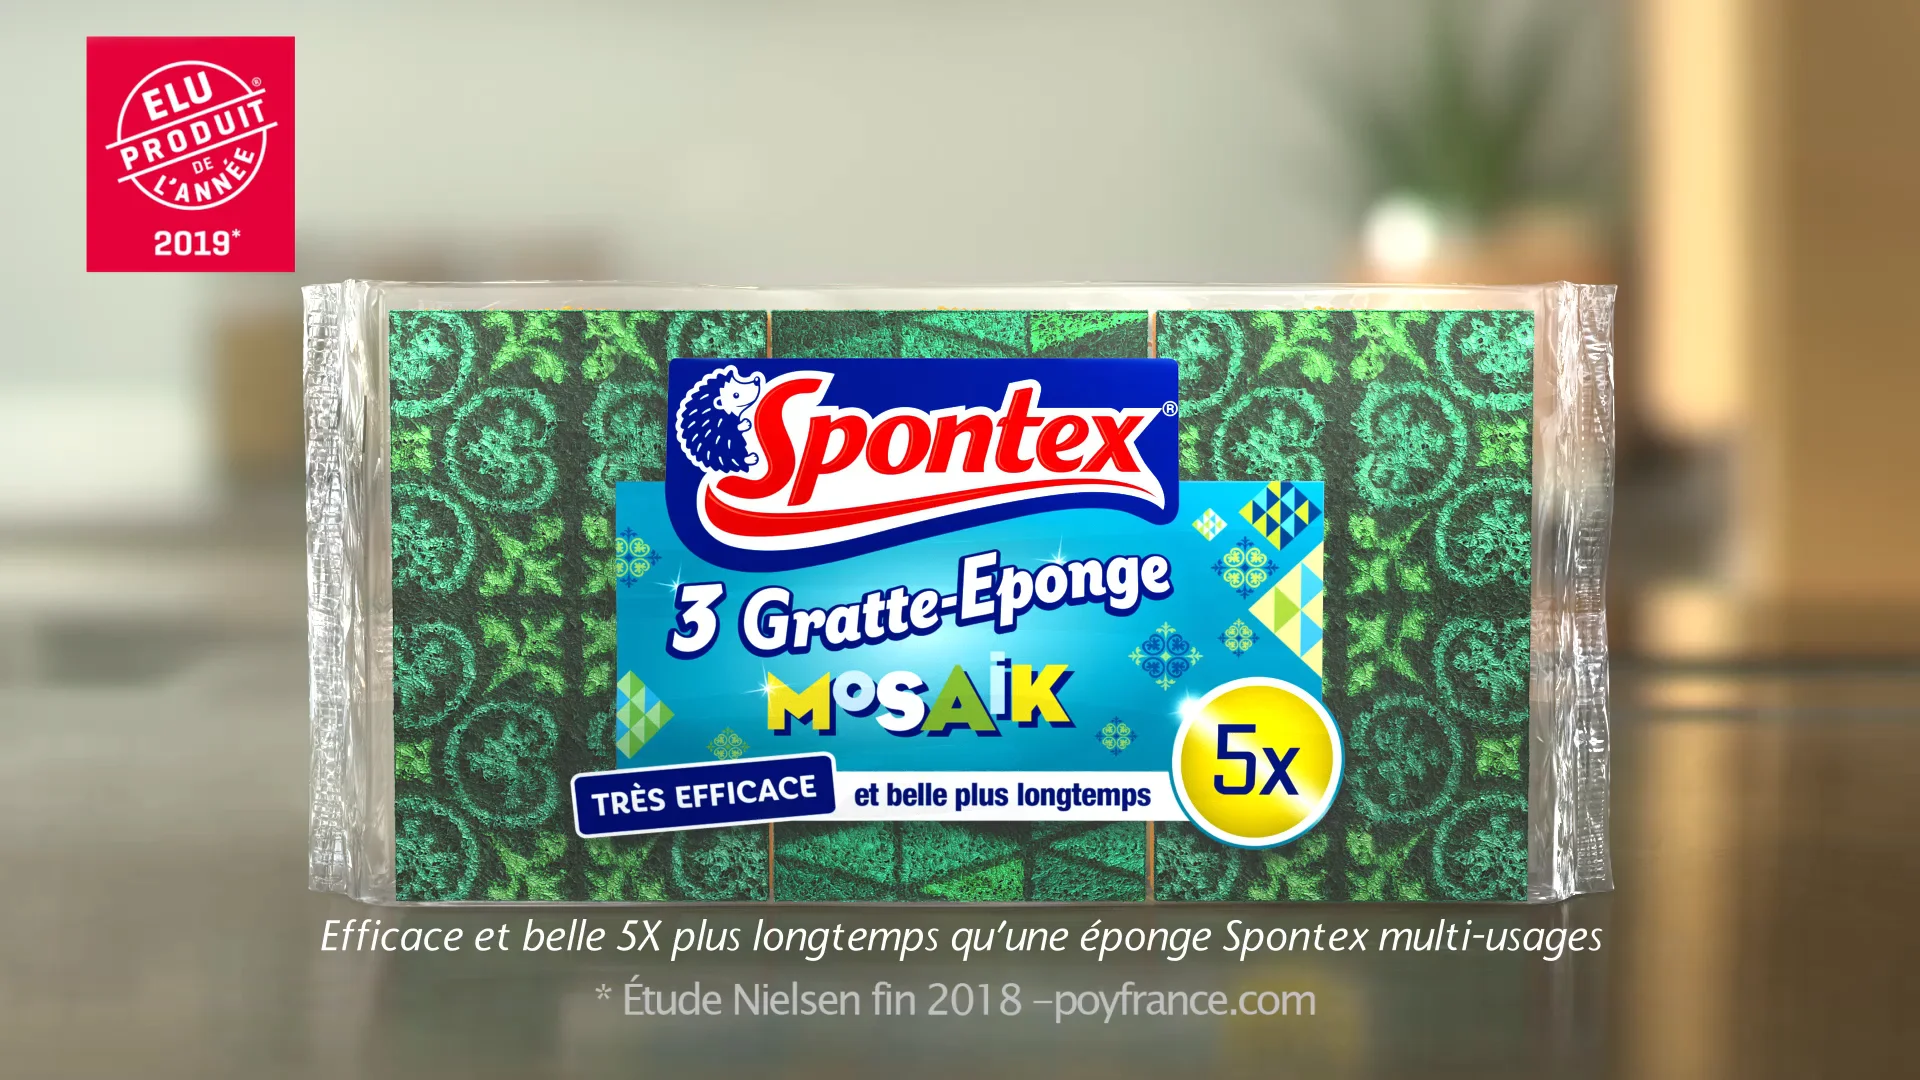 Spontex Gratte-Eponge Mosaik on Vimeo